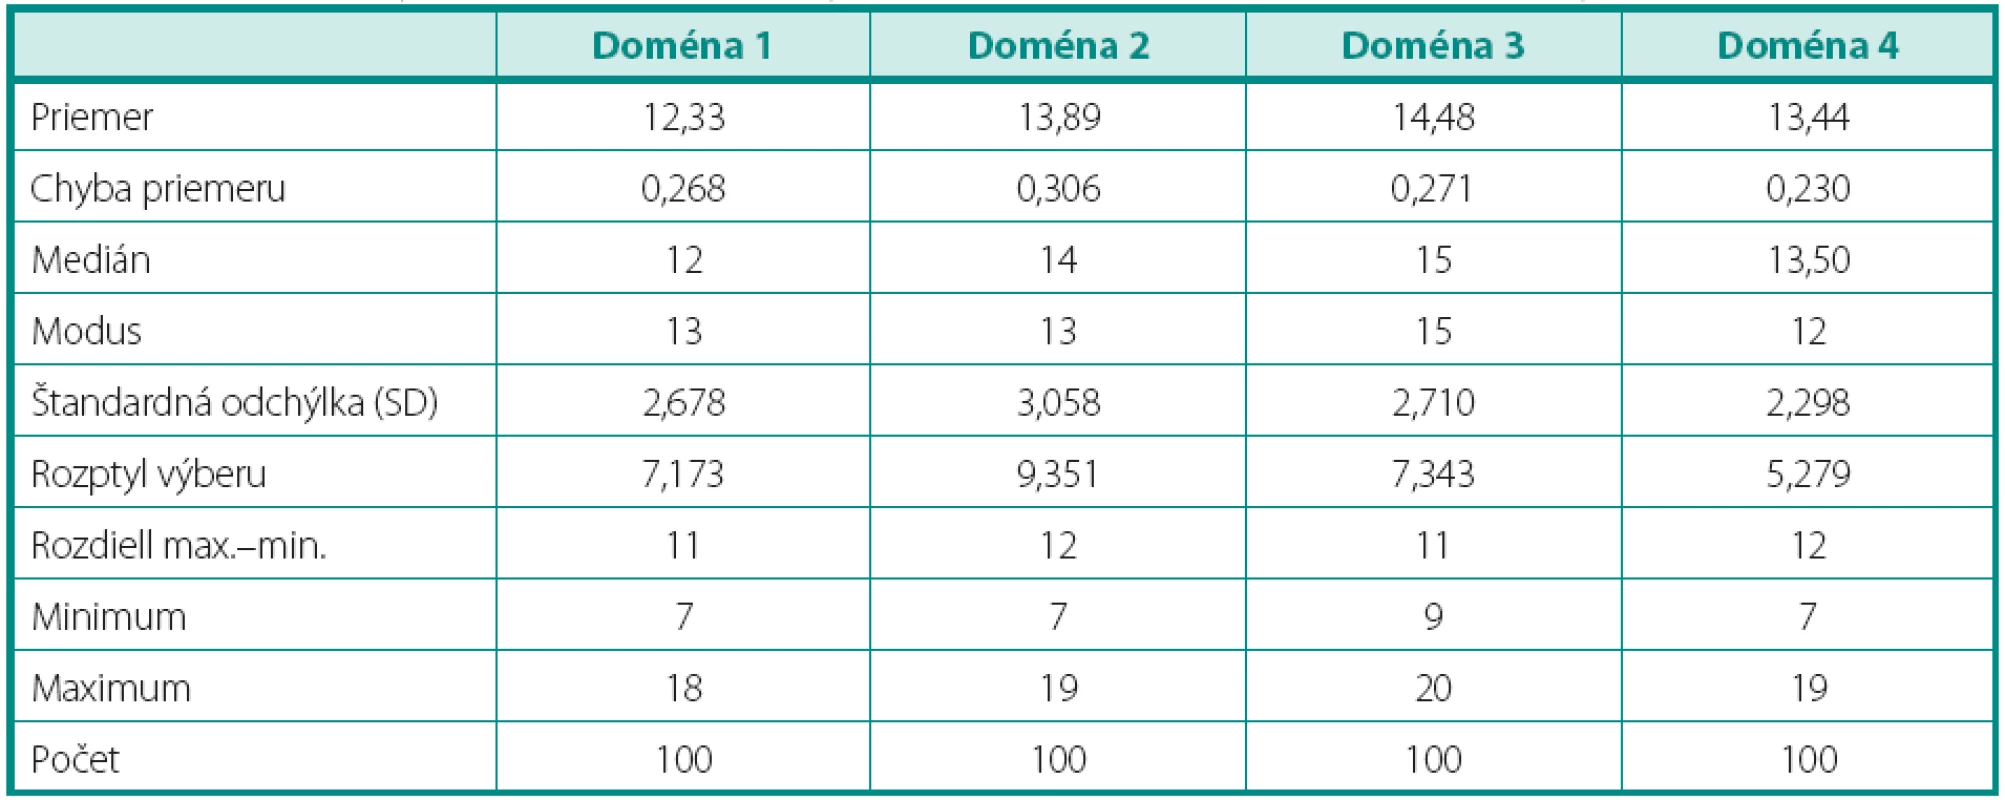 Výsledný súhrn deskriptívnej analýzy domén pre WHOQOL-Bref pre súbor dialyzovaných pacientov
Table 1. The summary of the descriptive analysis domain for the WHOQOL-Bref for dialysis patients